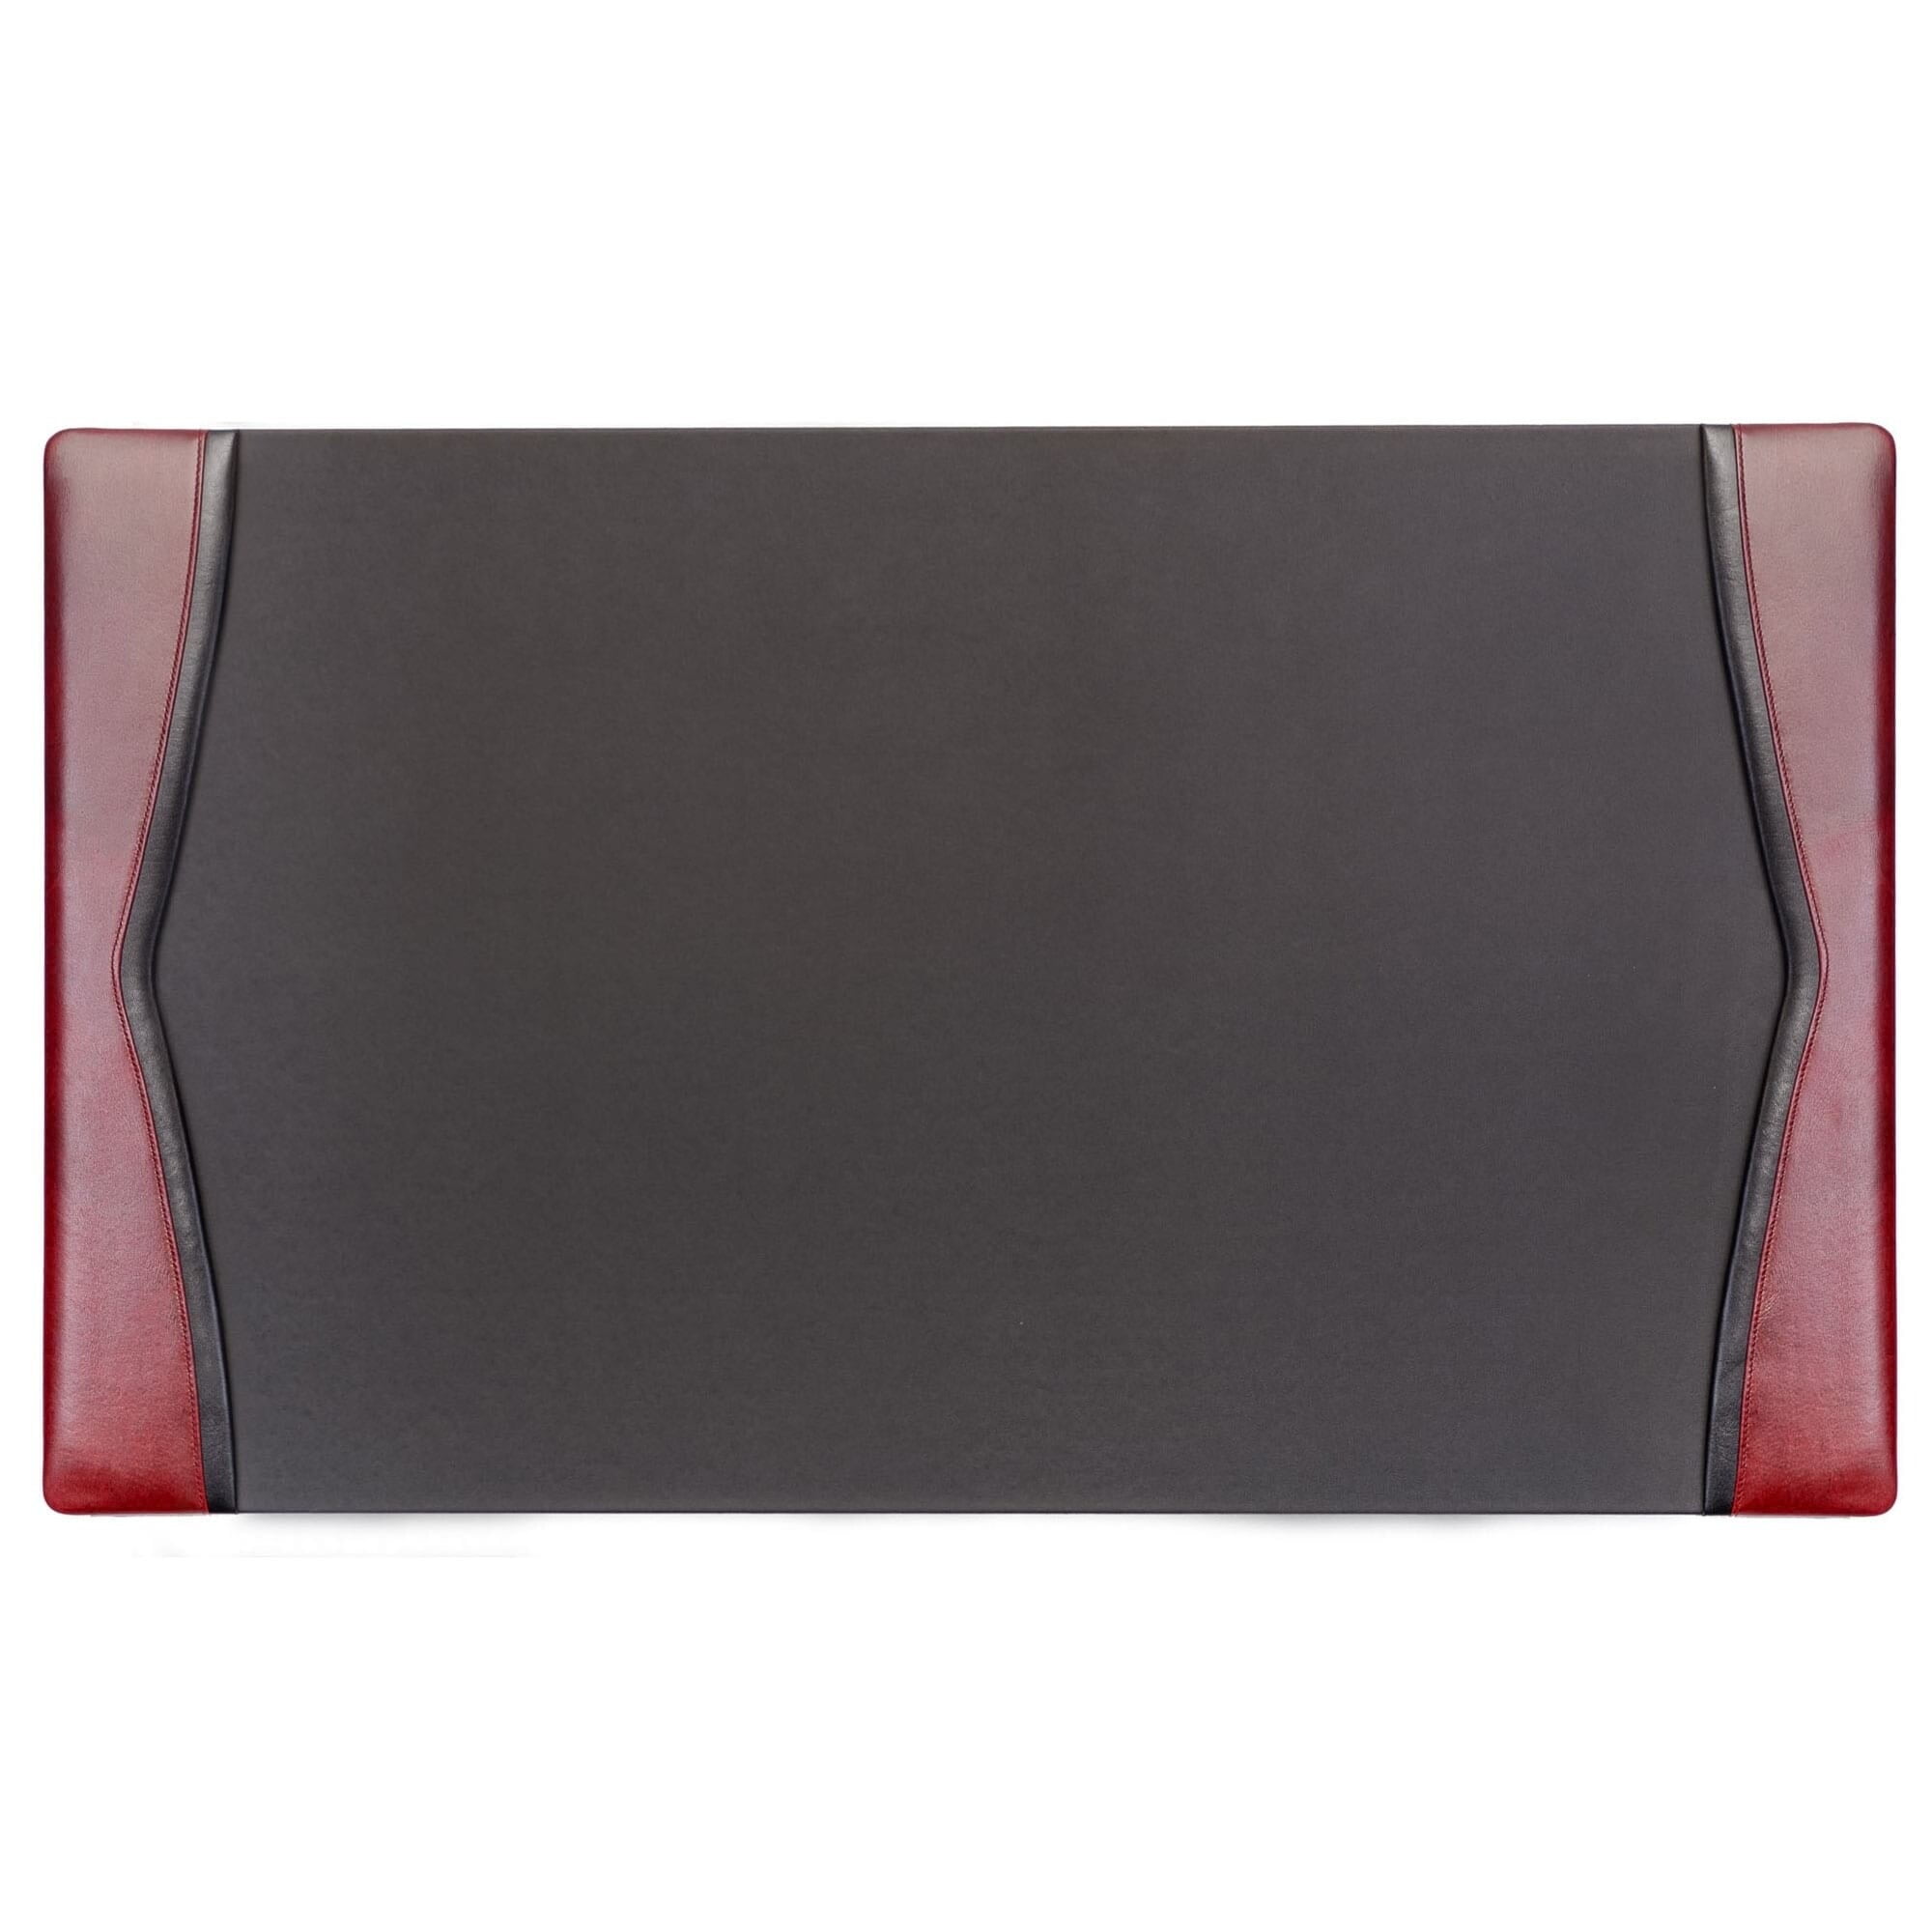 Black Leather 34 X 20 Top-Rail Desk Pad - Walmart.com